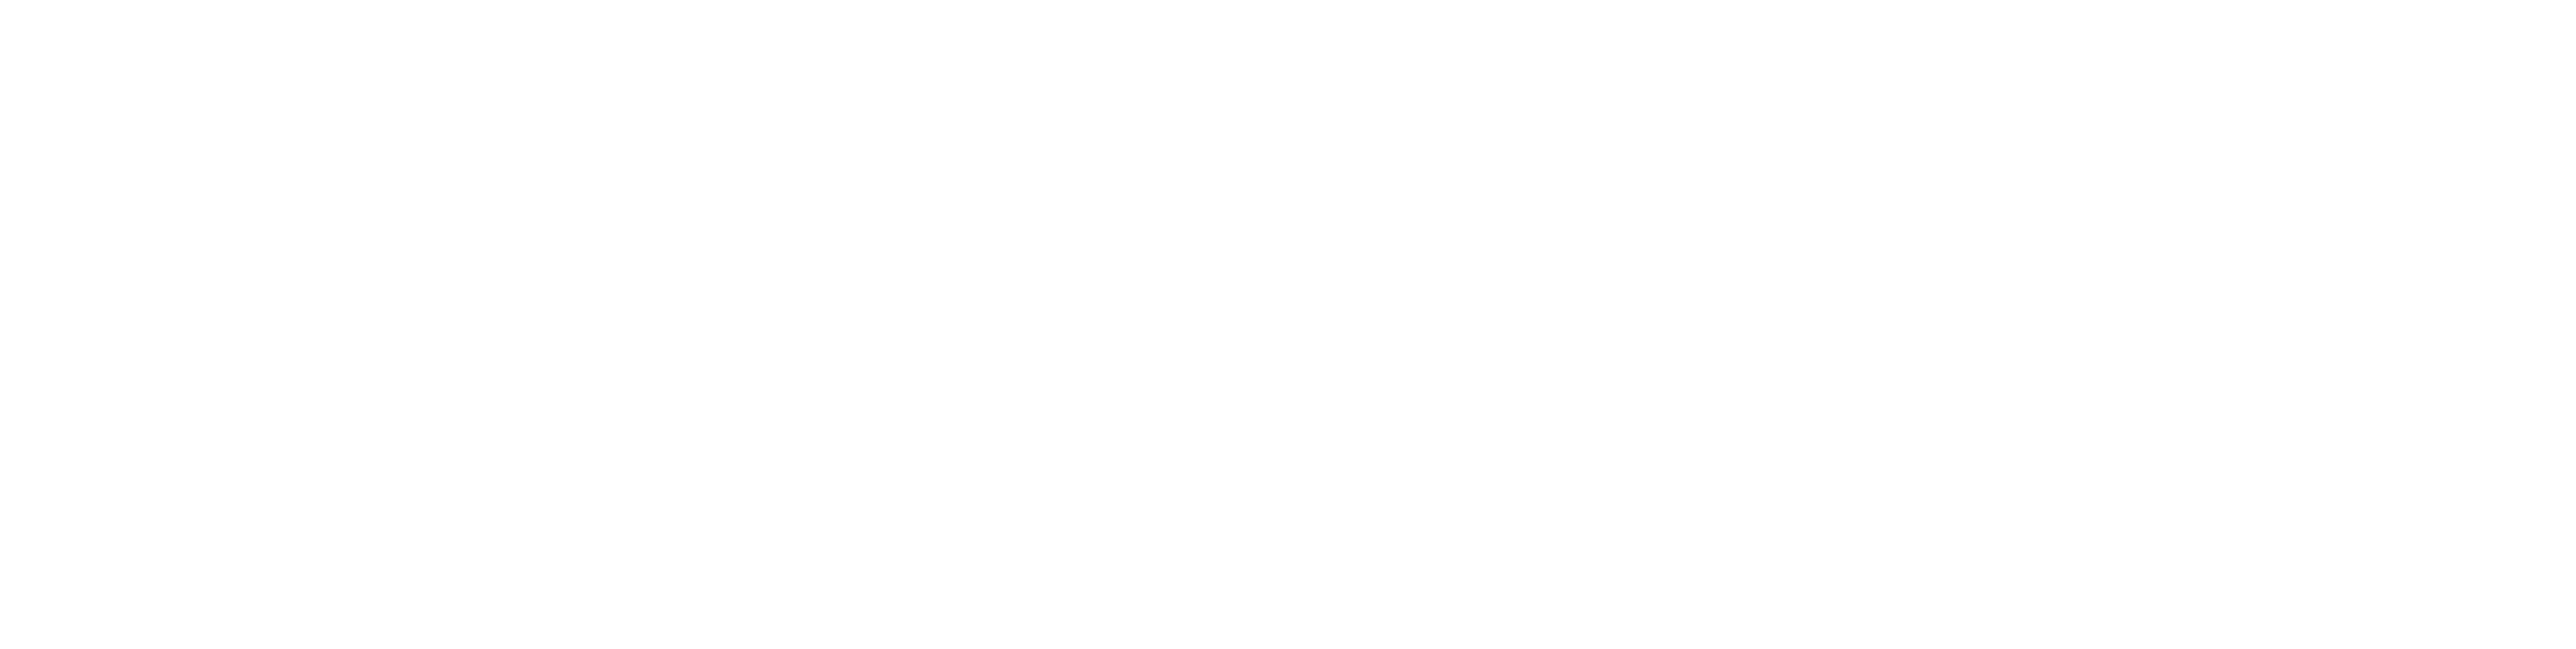 Gigantic Media, Inc.